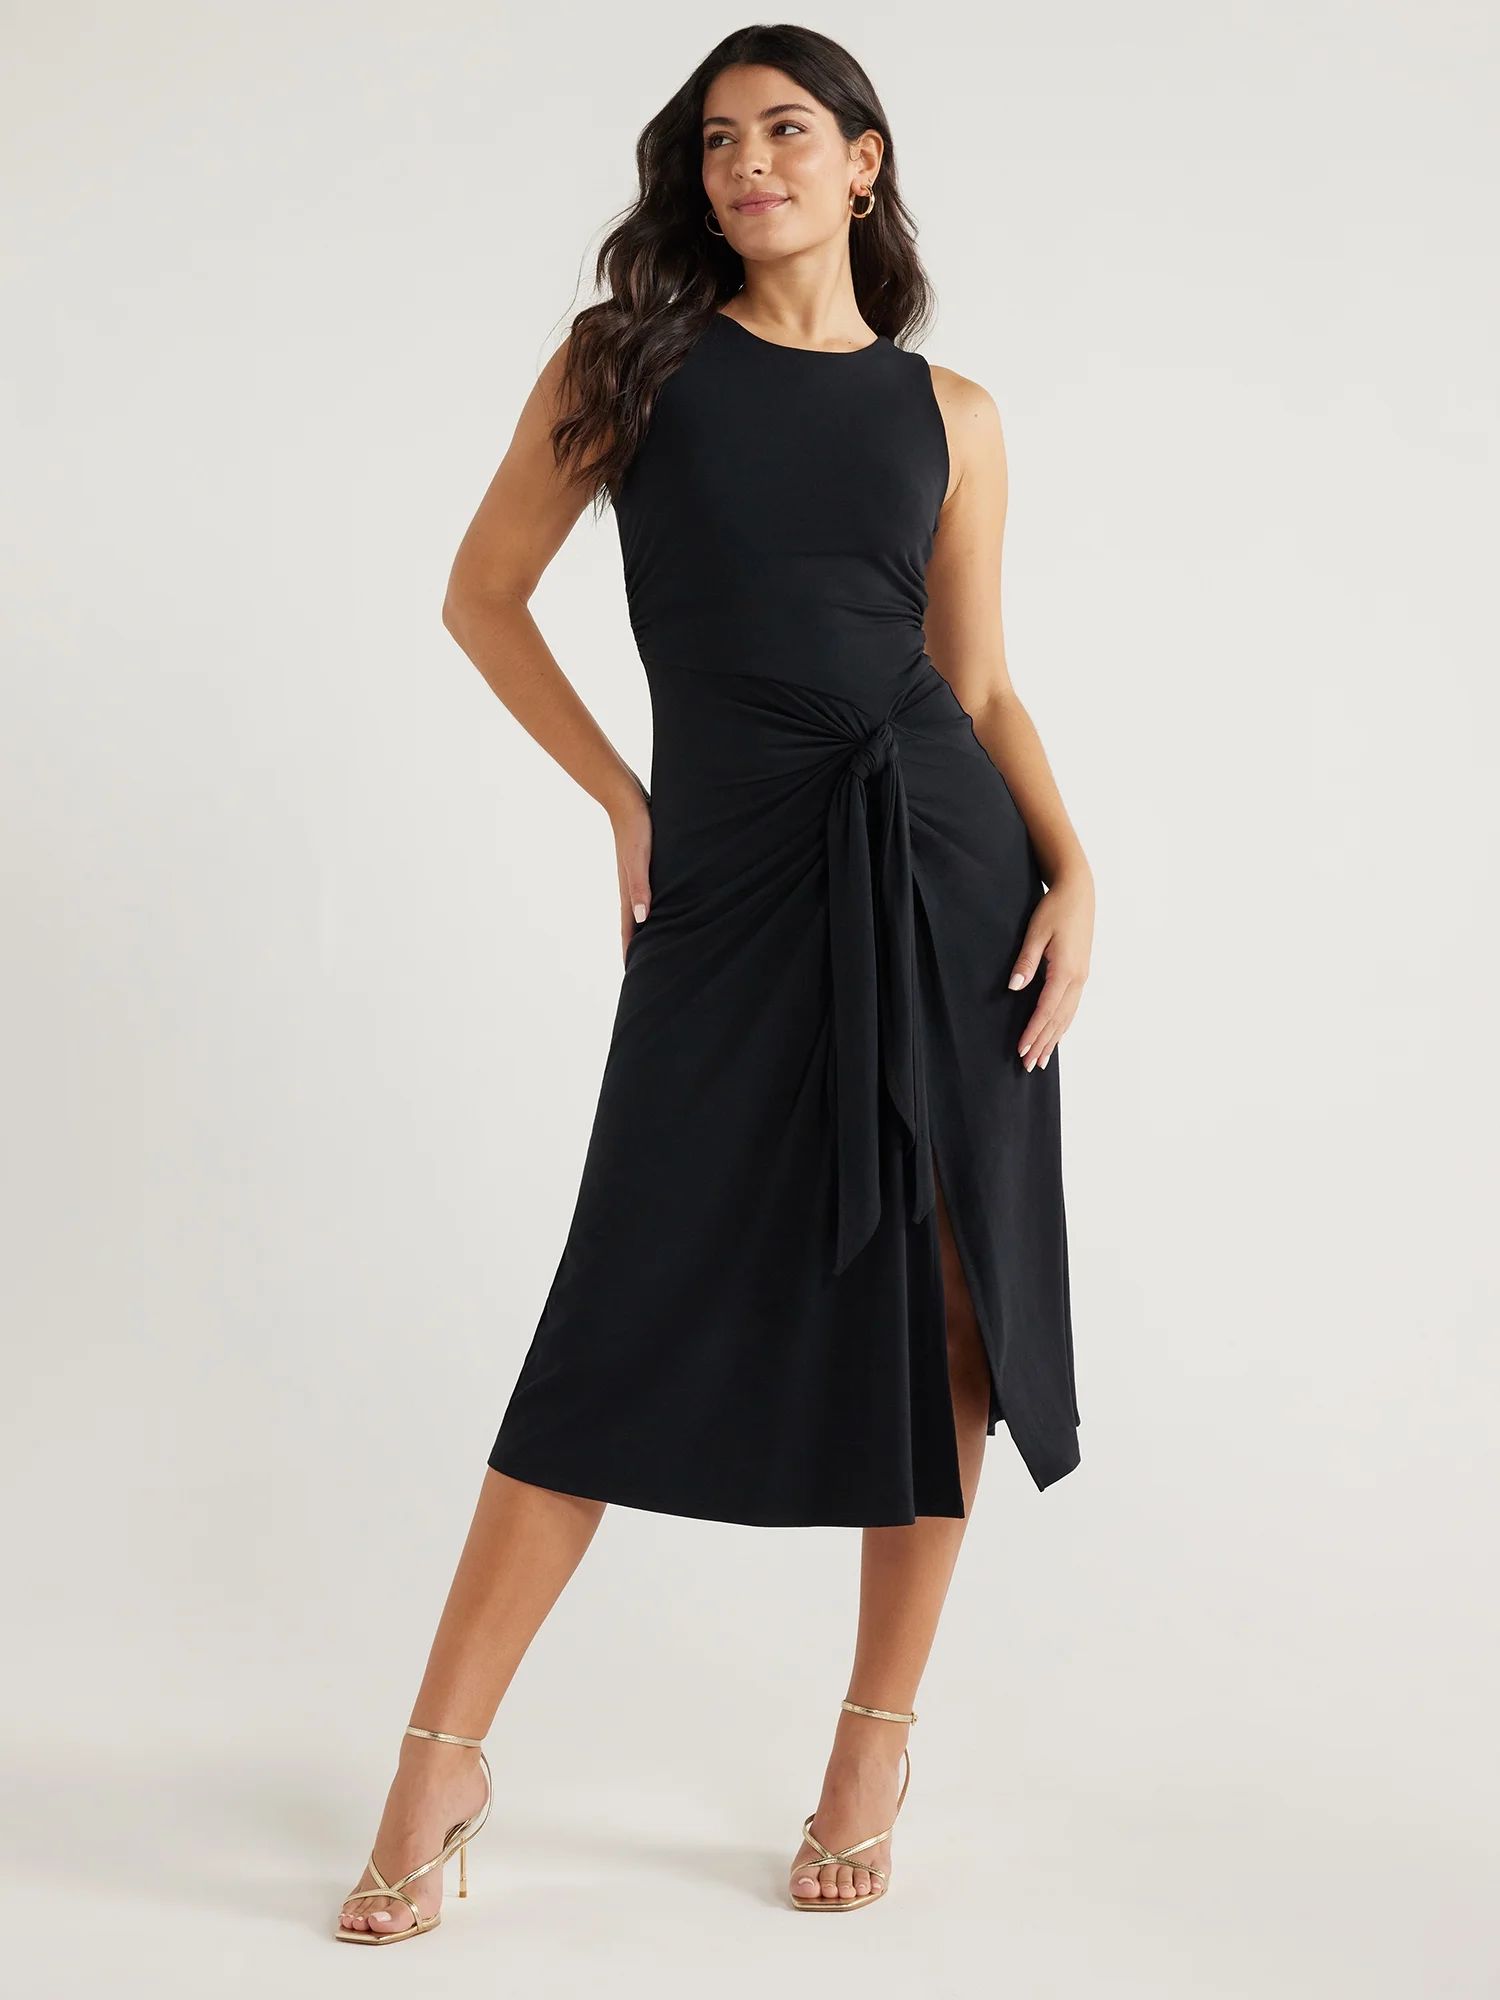 Sofia Jeans Women's and Women's Plus Side Tie Tank Dress with Rouching,  Sizes XXS-5X - Walmart.c... | Walmart (US)